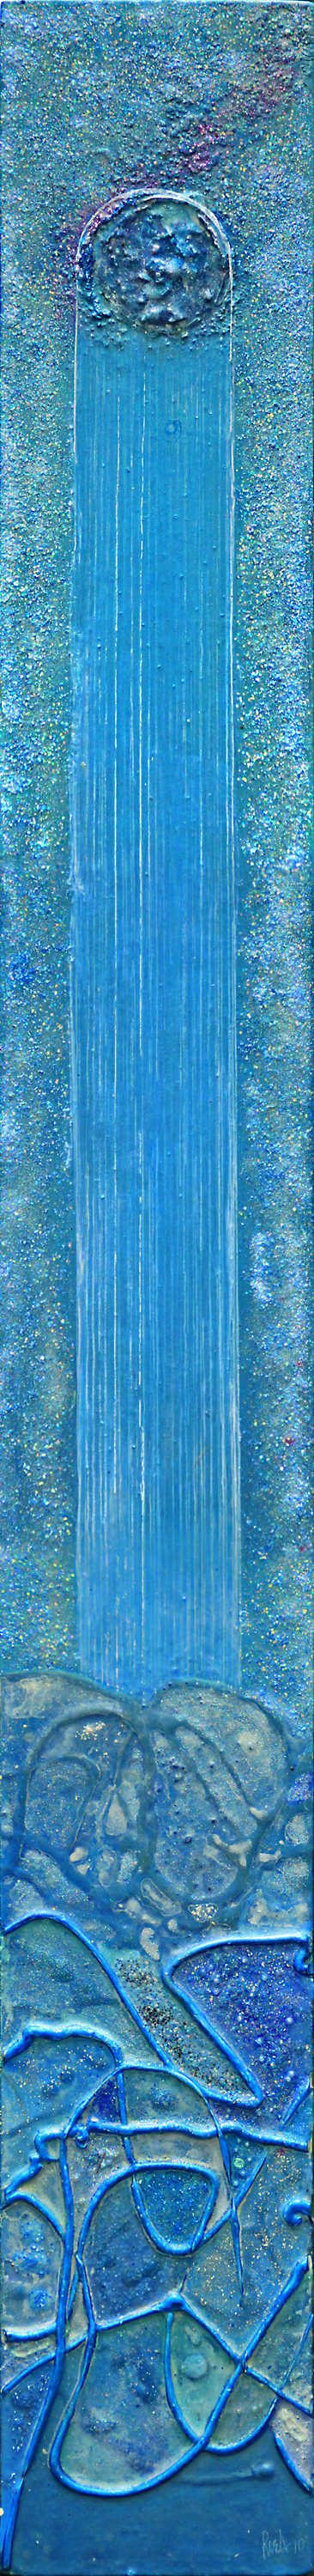 Mystic Landscape: Extragalactic Radiation, 49" x 6", acrylic and glitter on masonite, 2010